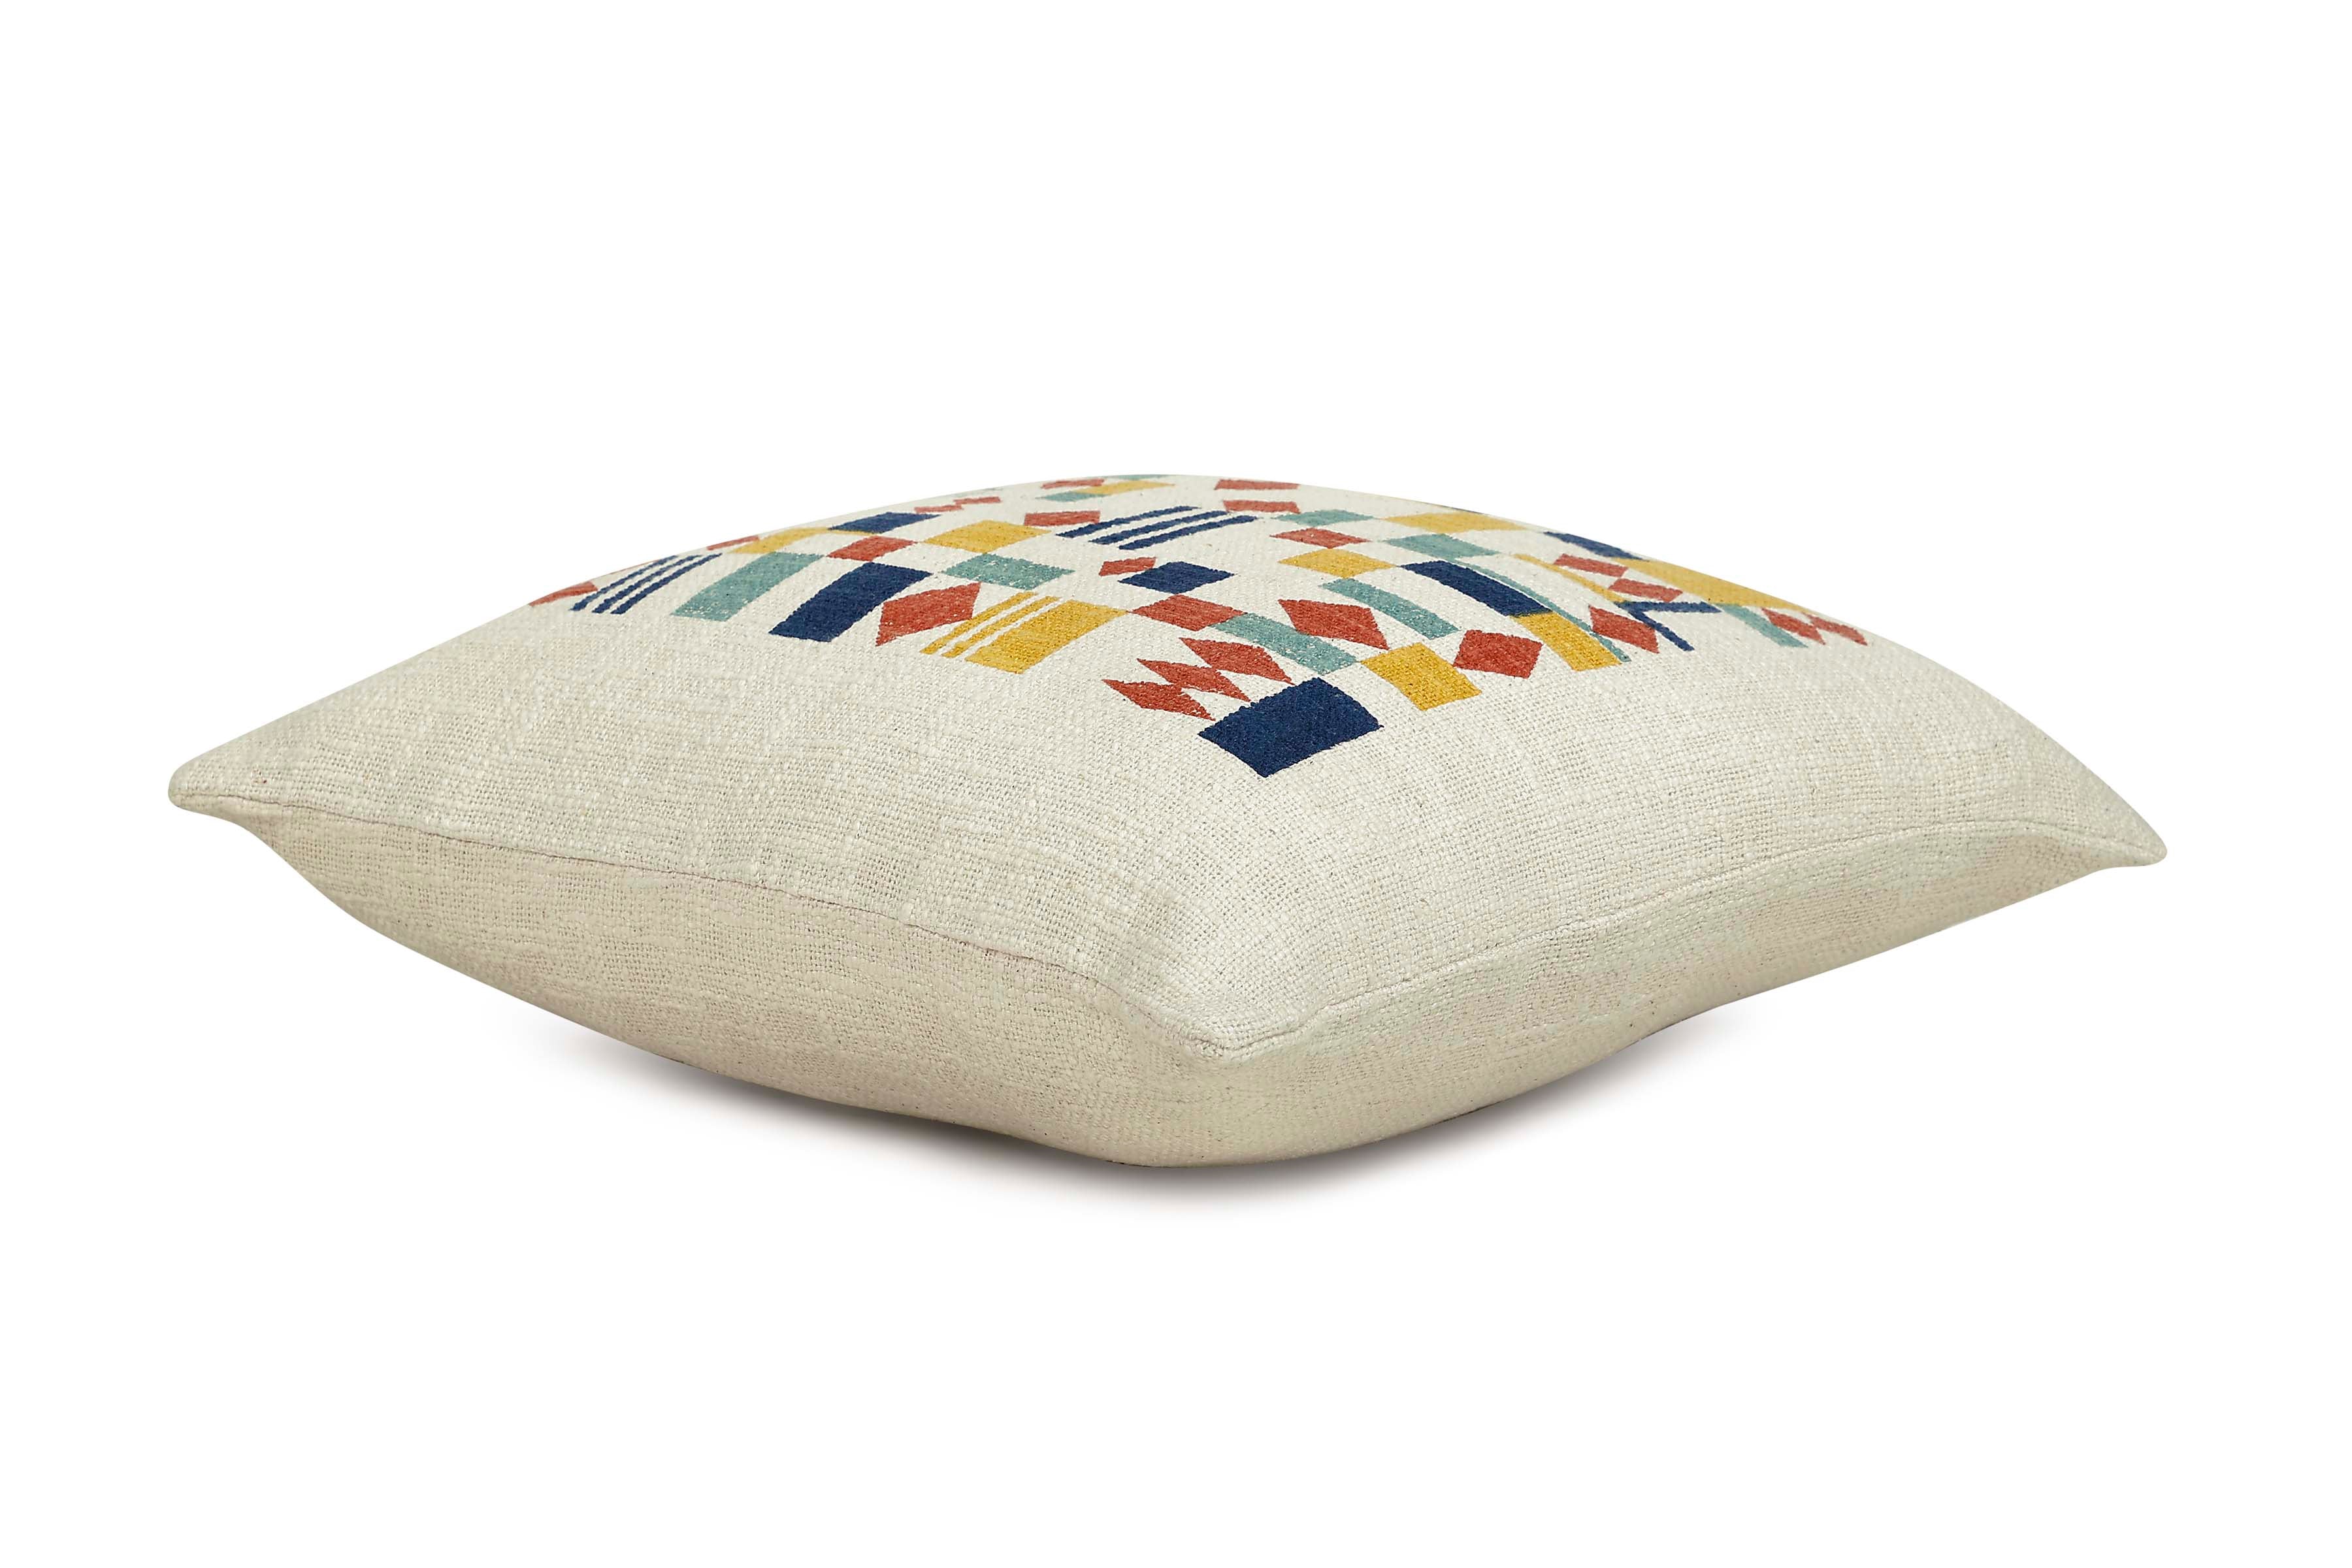 Aakar Tiles Modern Accent Pillow, Multi - 18x18 inch